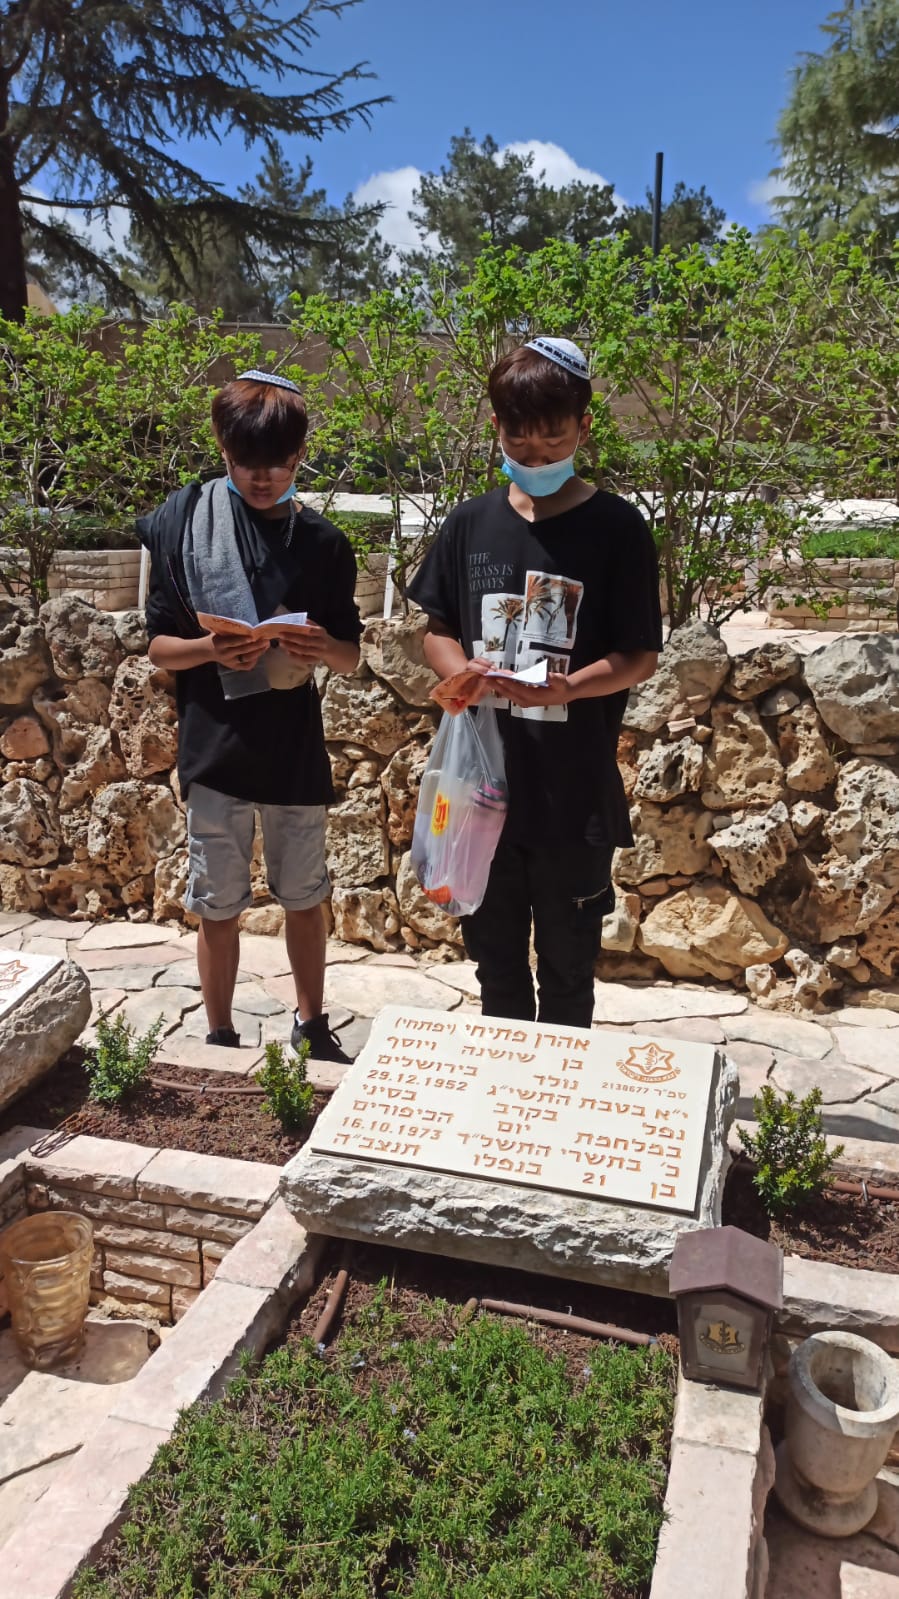 קדושים הם: פוקדים את קבריהם של בוגרי הכפר שנפלו במערכות ישראל